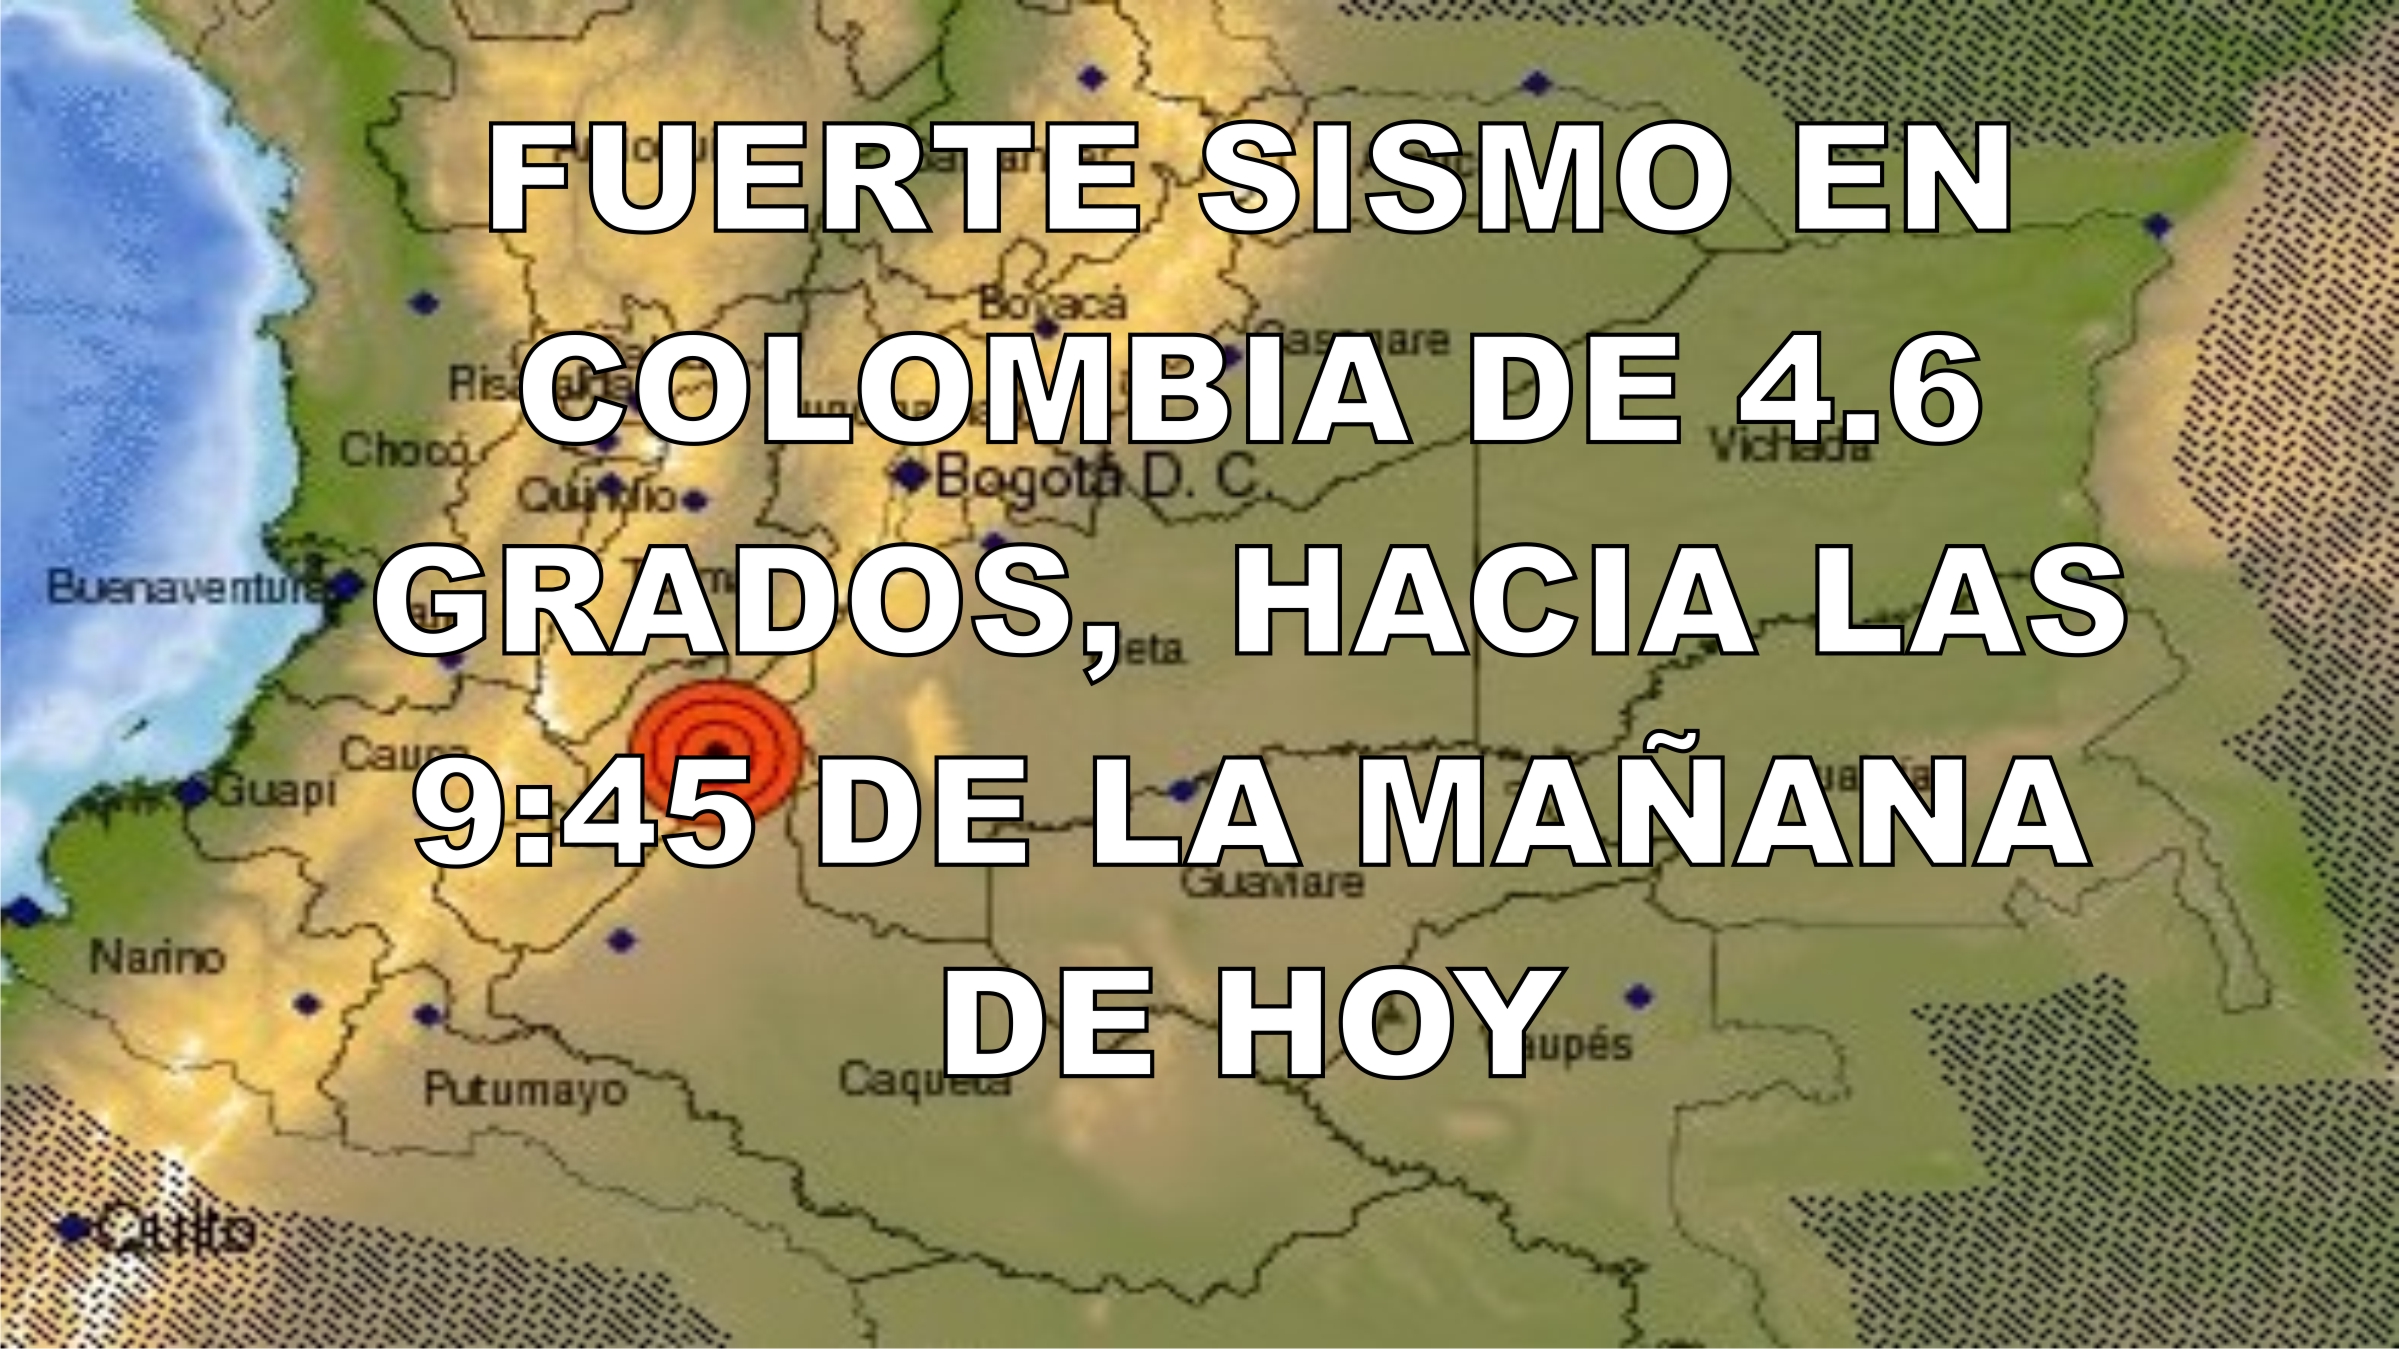 Fuerte Sismo En Colombia De 4 6 Grados Hacia Las 9 45 De La Mañana De Hoy El Notiloco De Botero